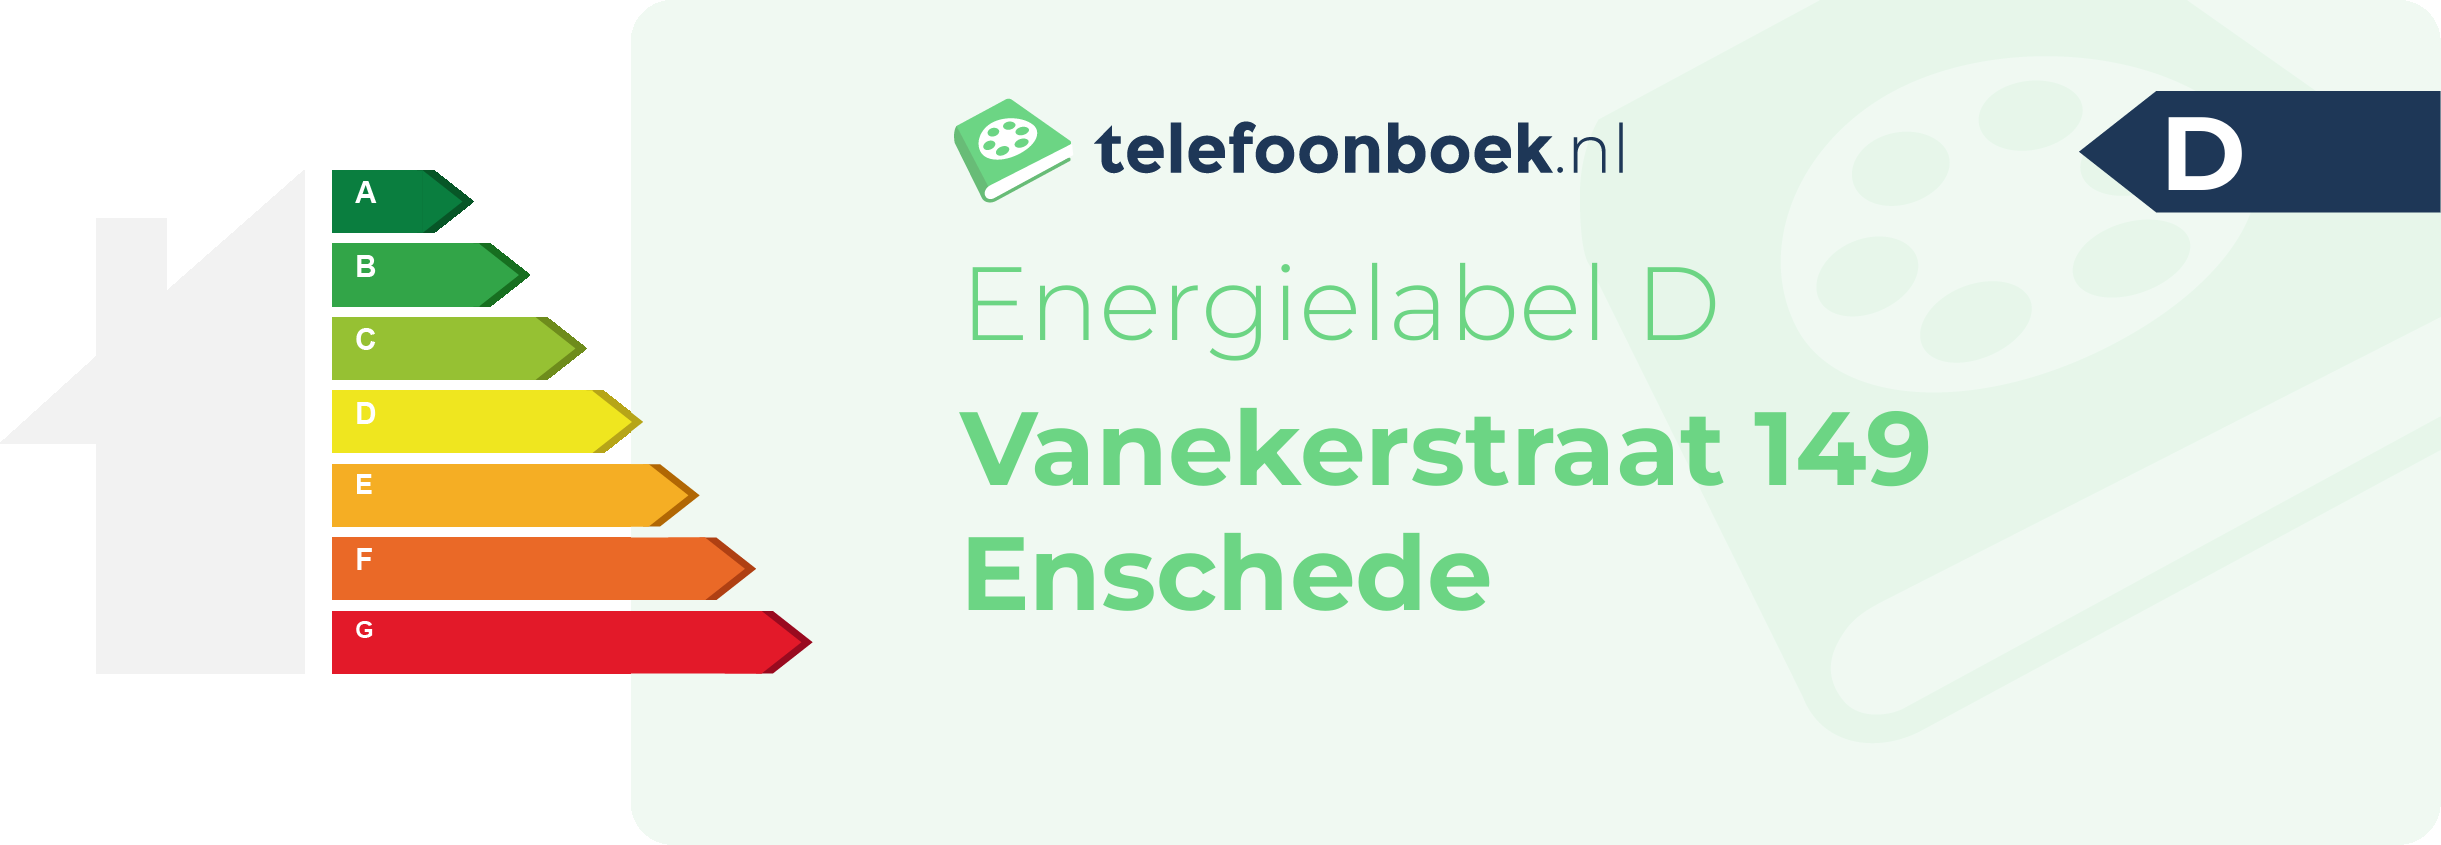 Energielabel Vanekerstraat 149 Enschede